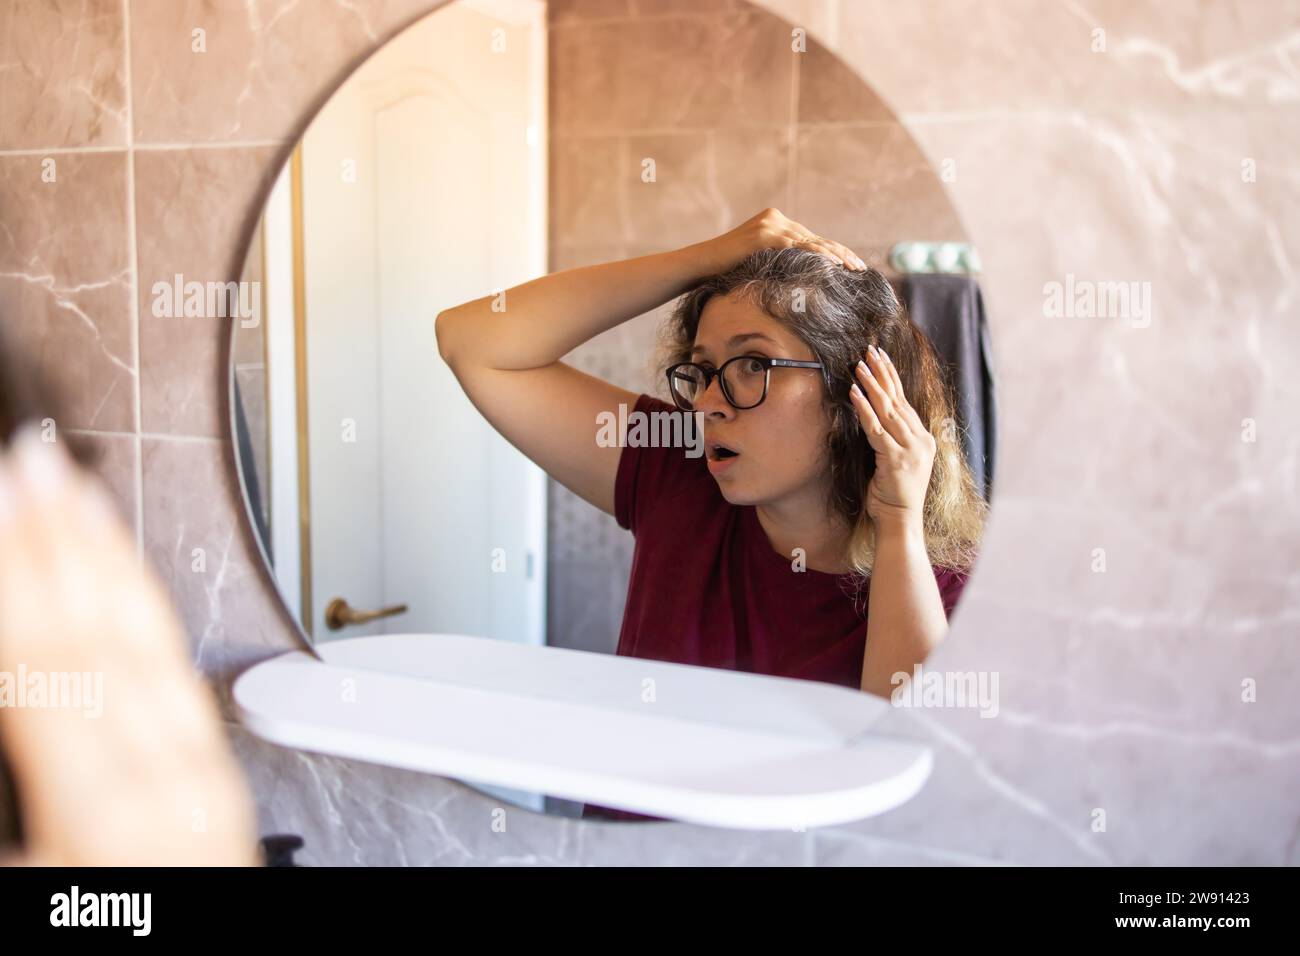 Grauhaarige überraschte kaukasische Frau mittleren Alters, die den grauen Haarkopf in Spiegelreflektion betrachtet. Frühes graues Haarkonzept Stockfoto